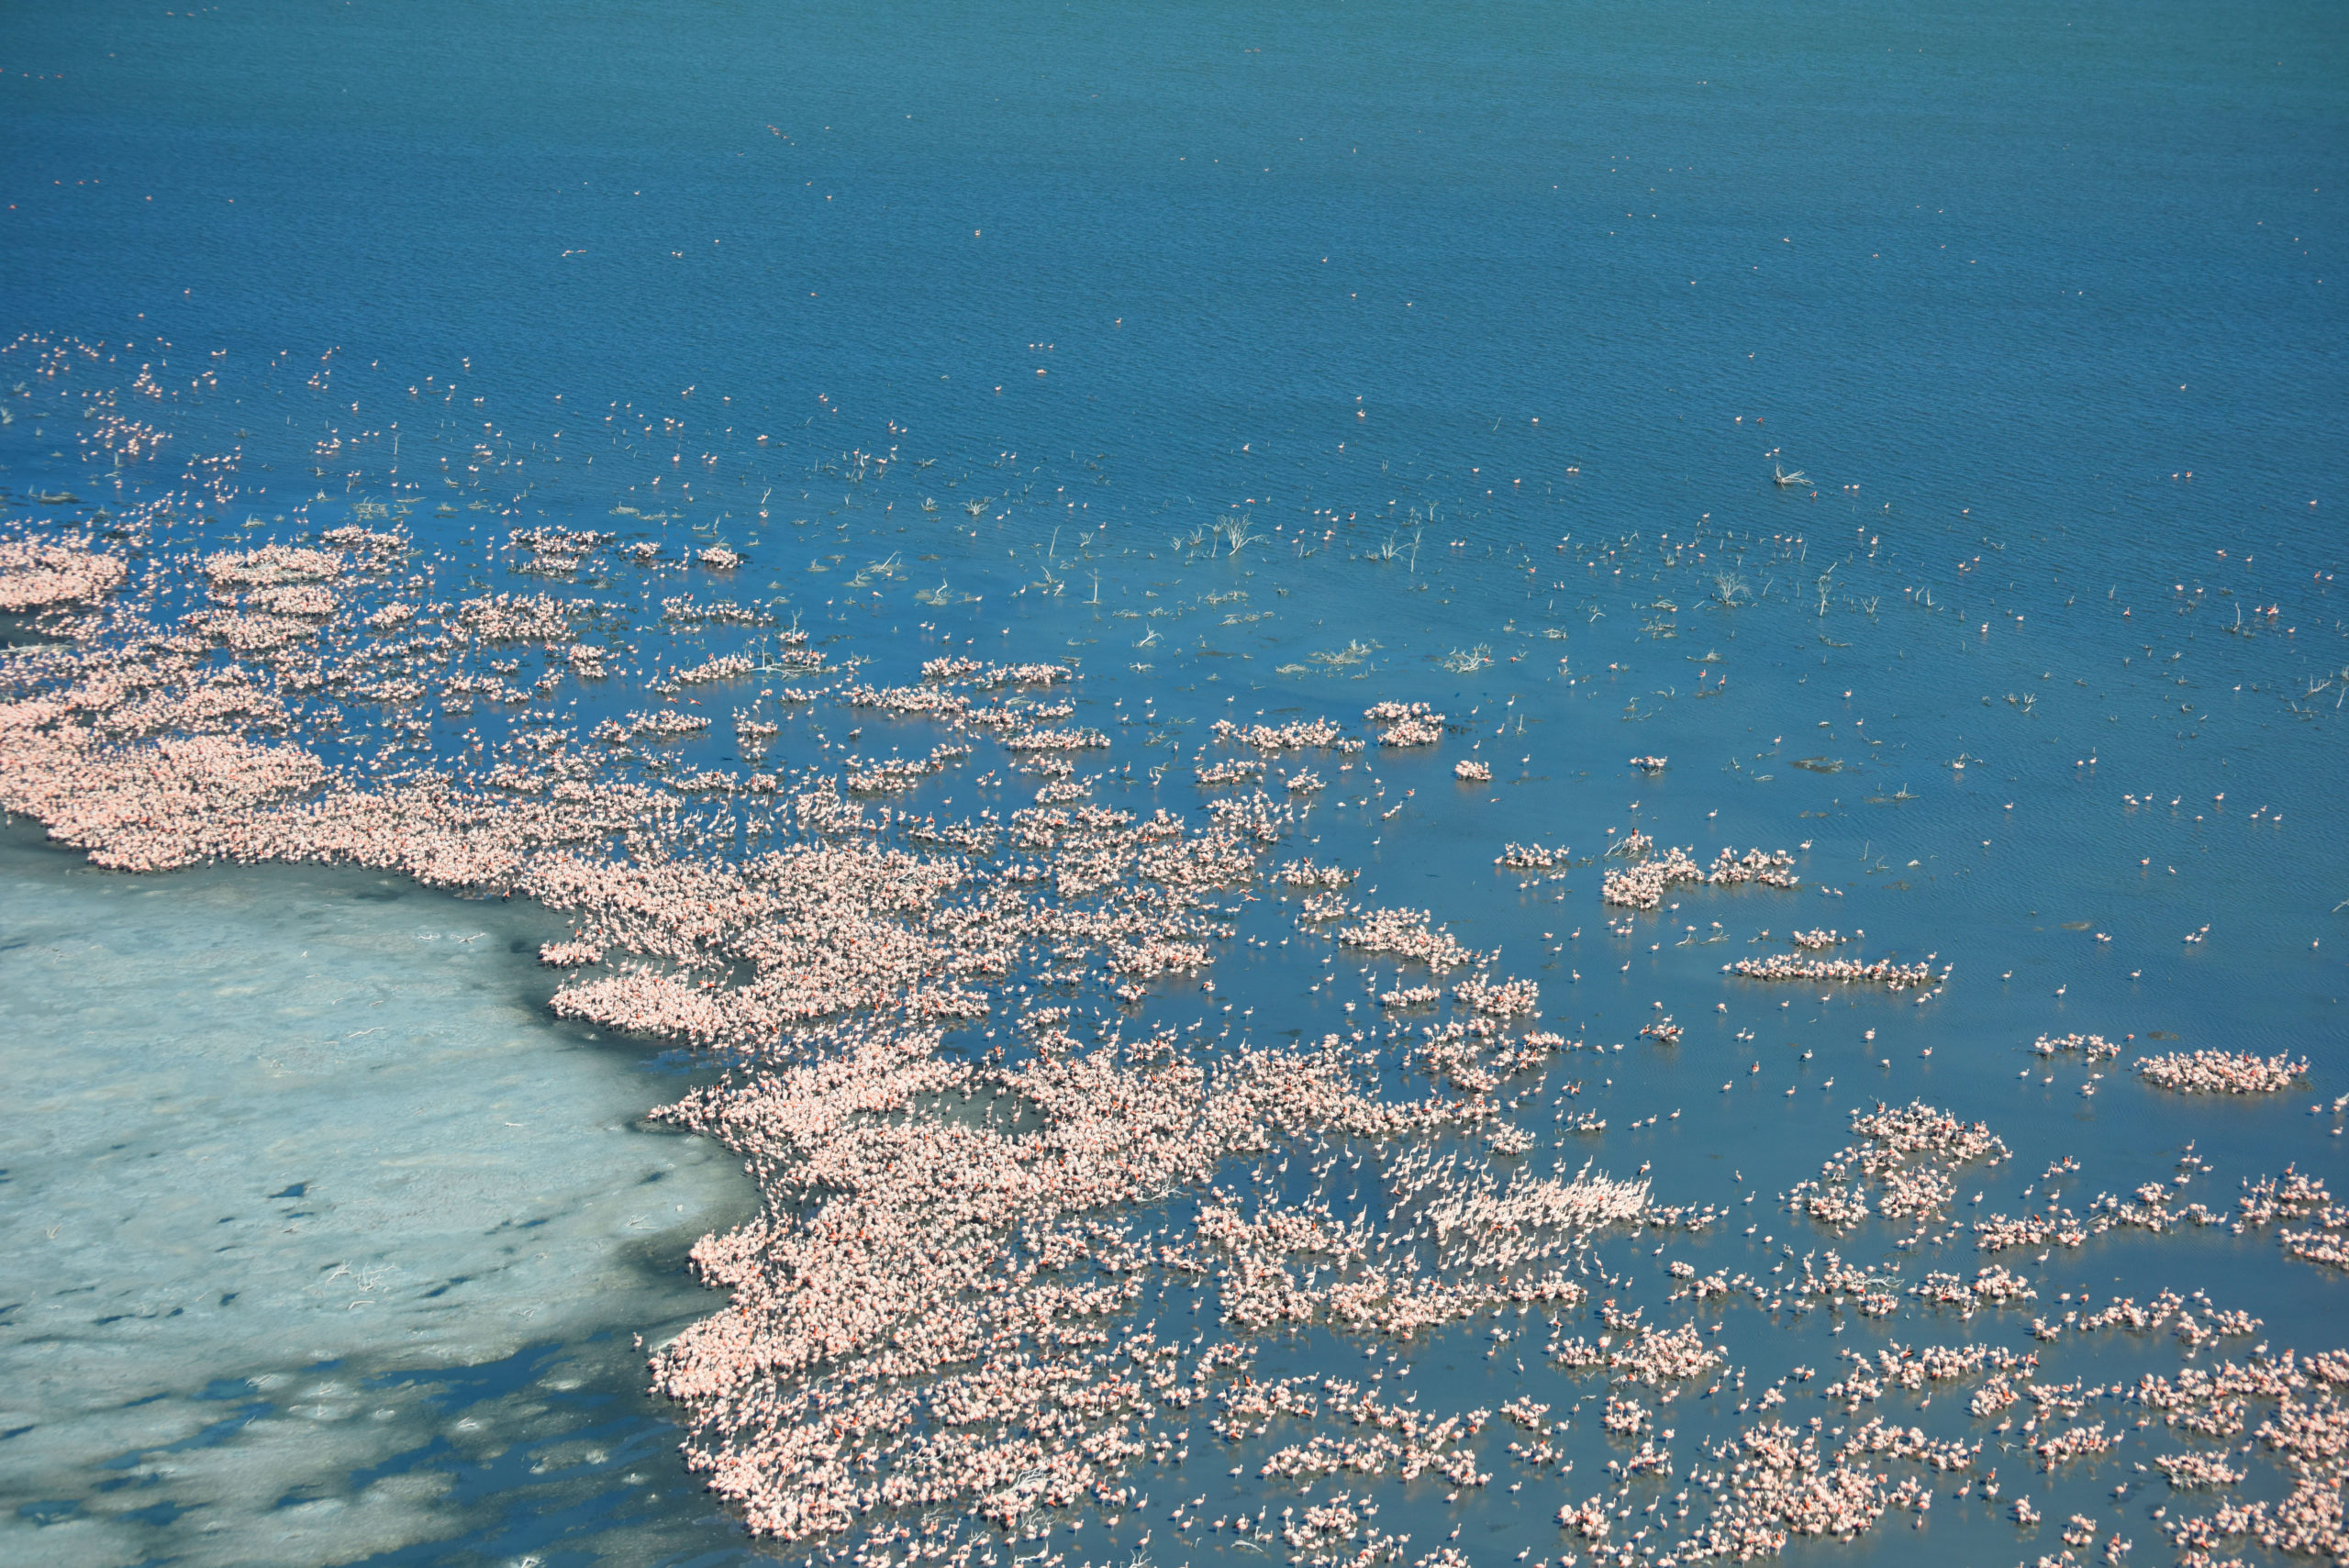 Un lago azul profundo bordeado por un borde salado está salpicado de miles de flamencos rosados